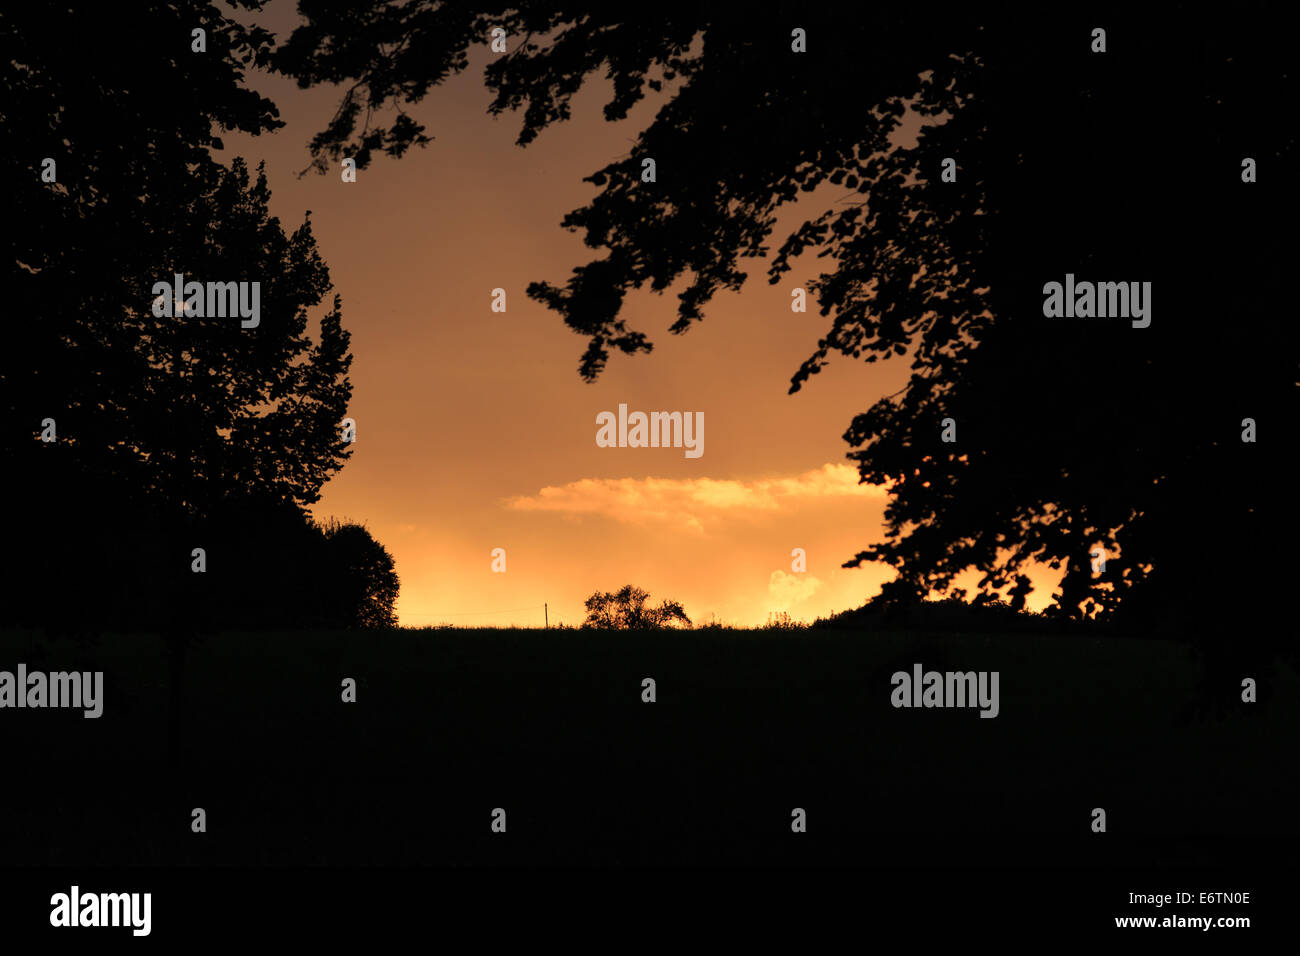 Una fotografia di alcune nuvole temporalesche essendo illuminato dal basso in arancione dal sole al tramonto, creando un effetto di Fiery. Foto Stock